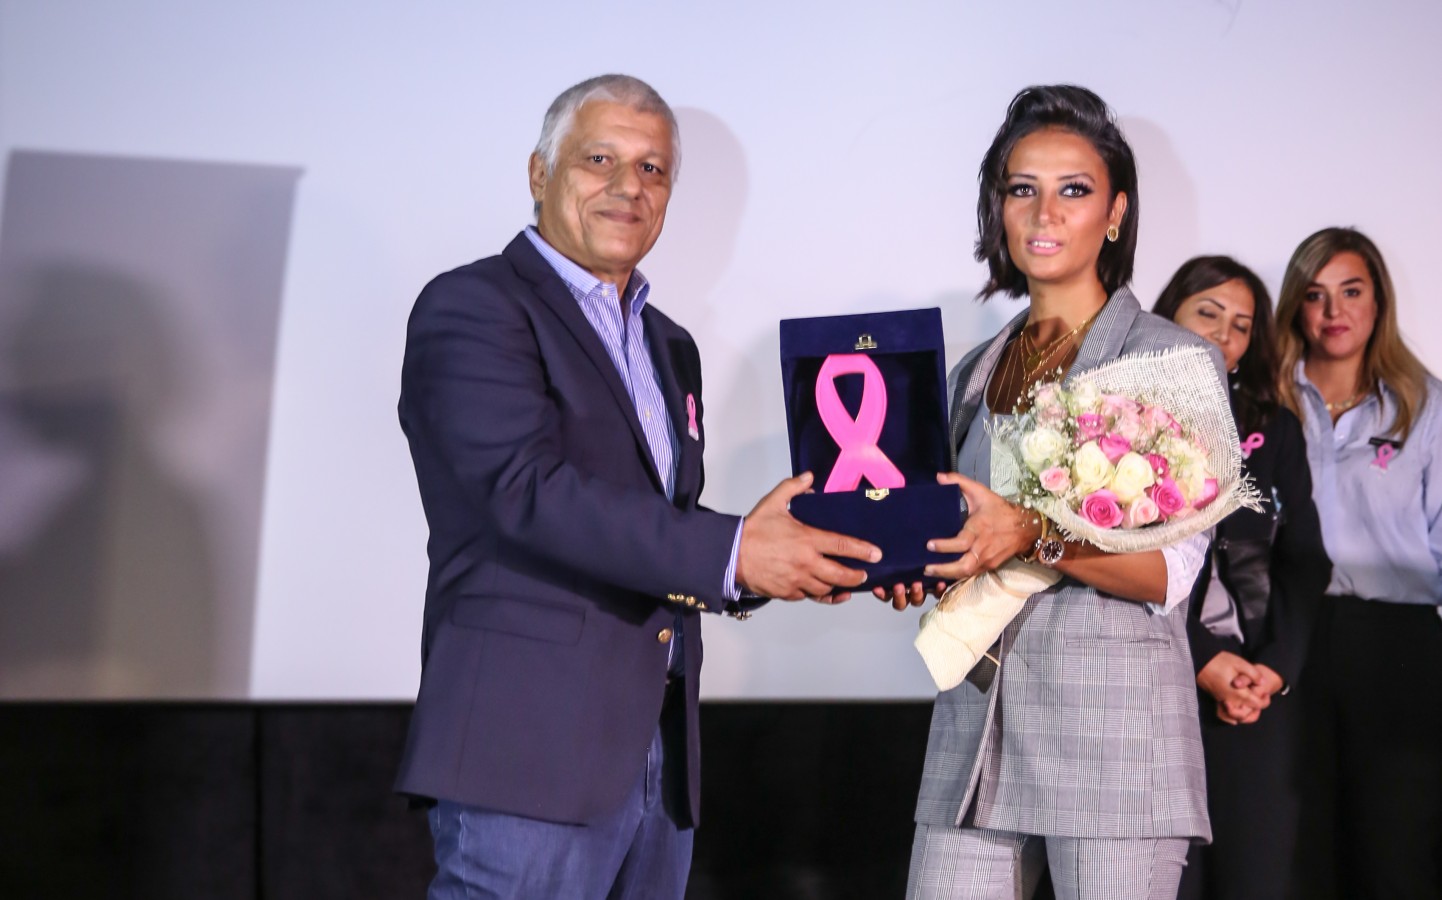 مستشفى بهية يكرّم ياسمين غيث لدعمها مرضى سرطان الثدي